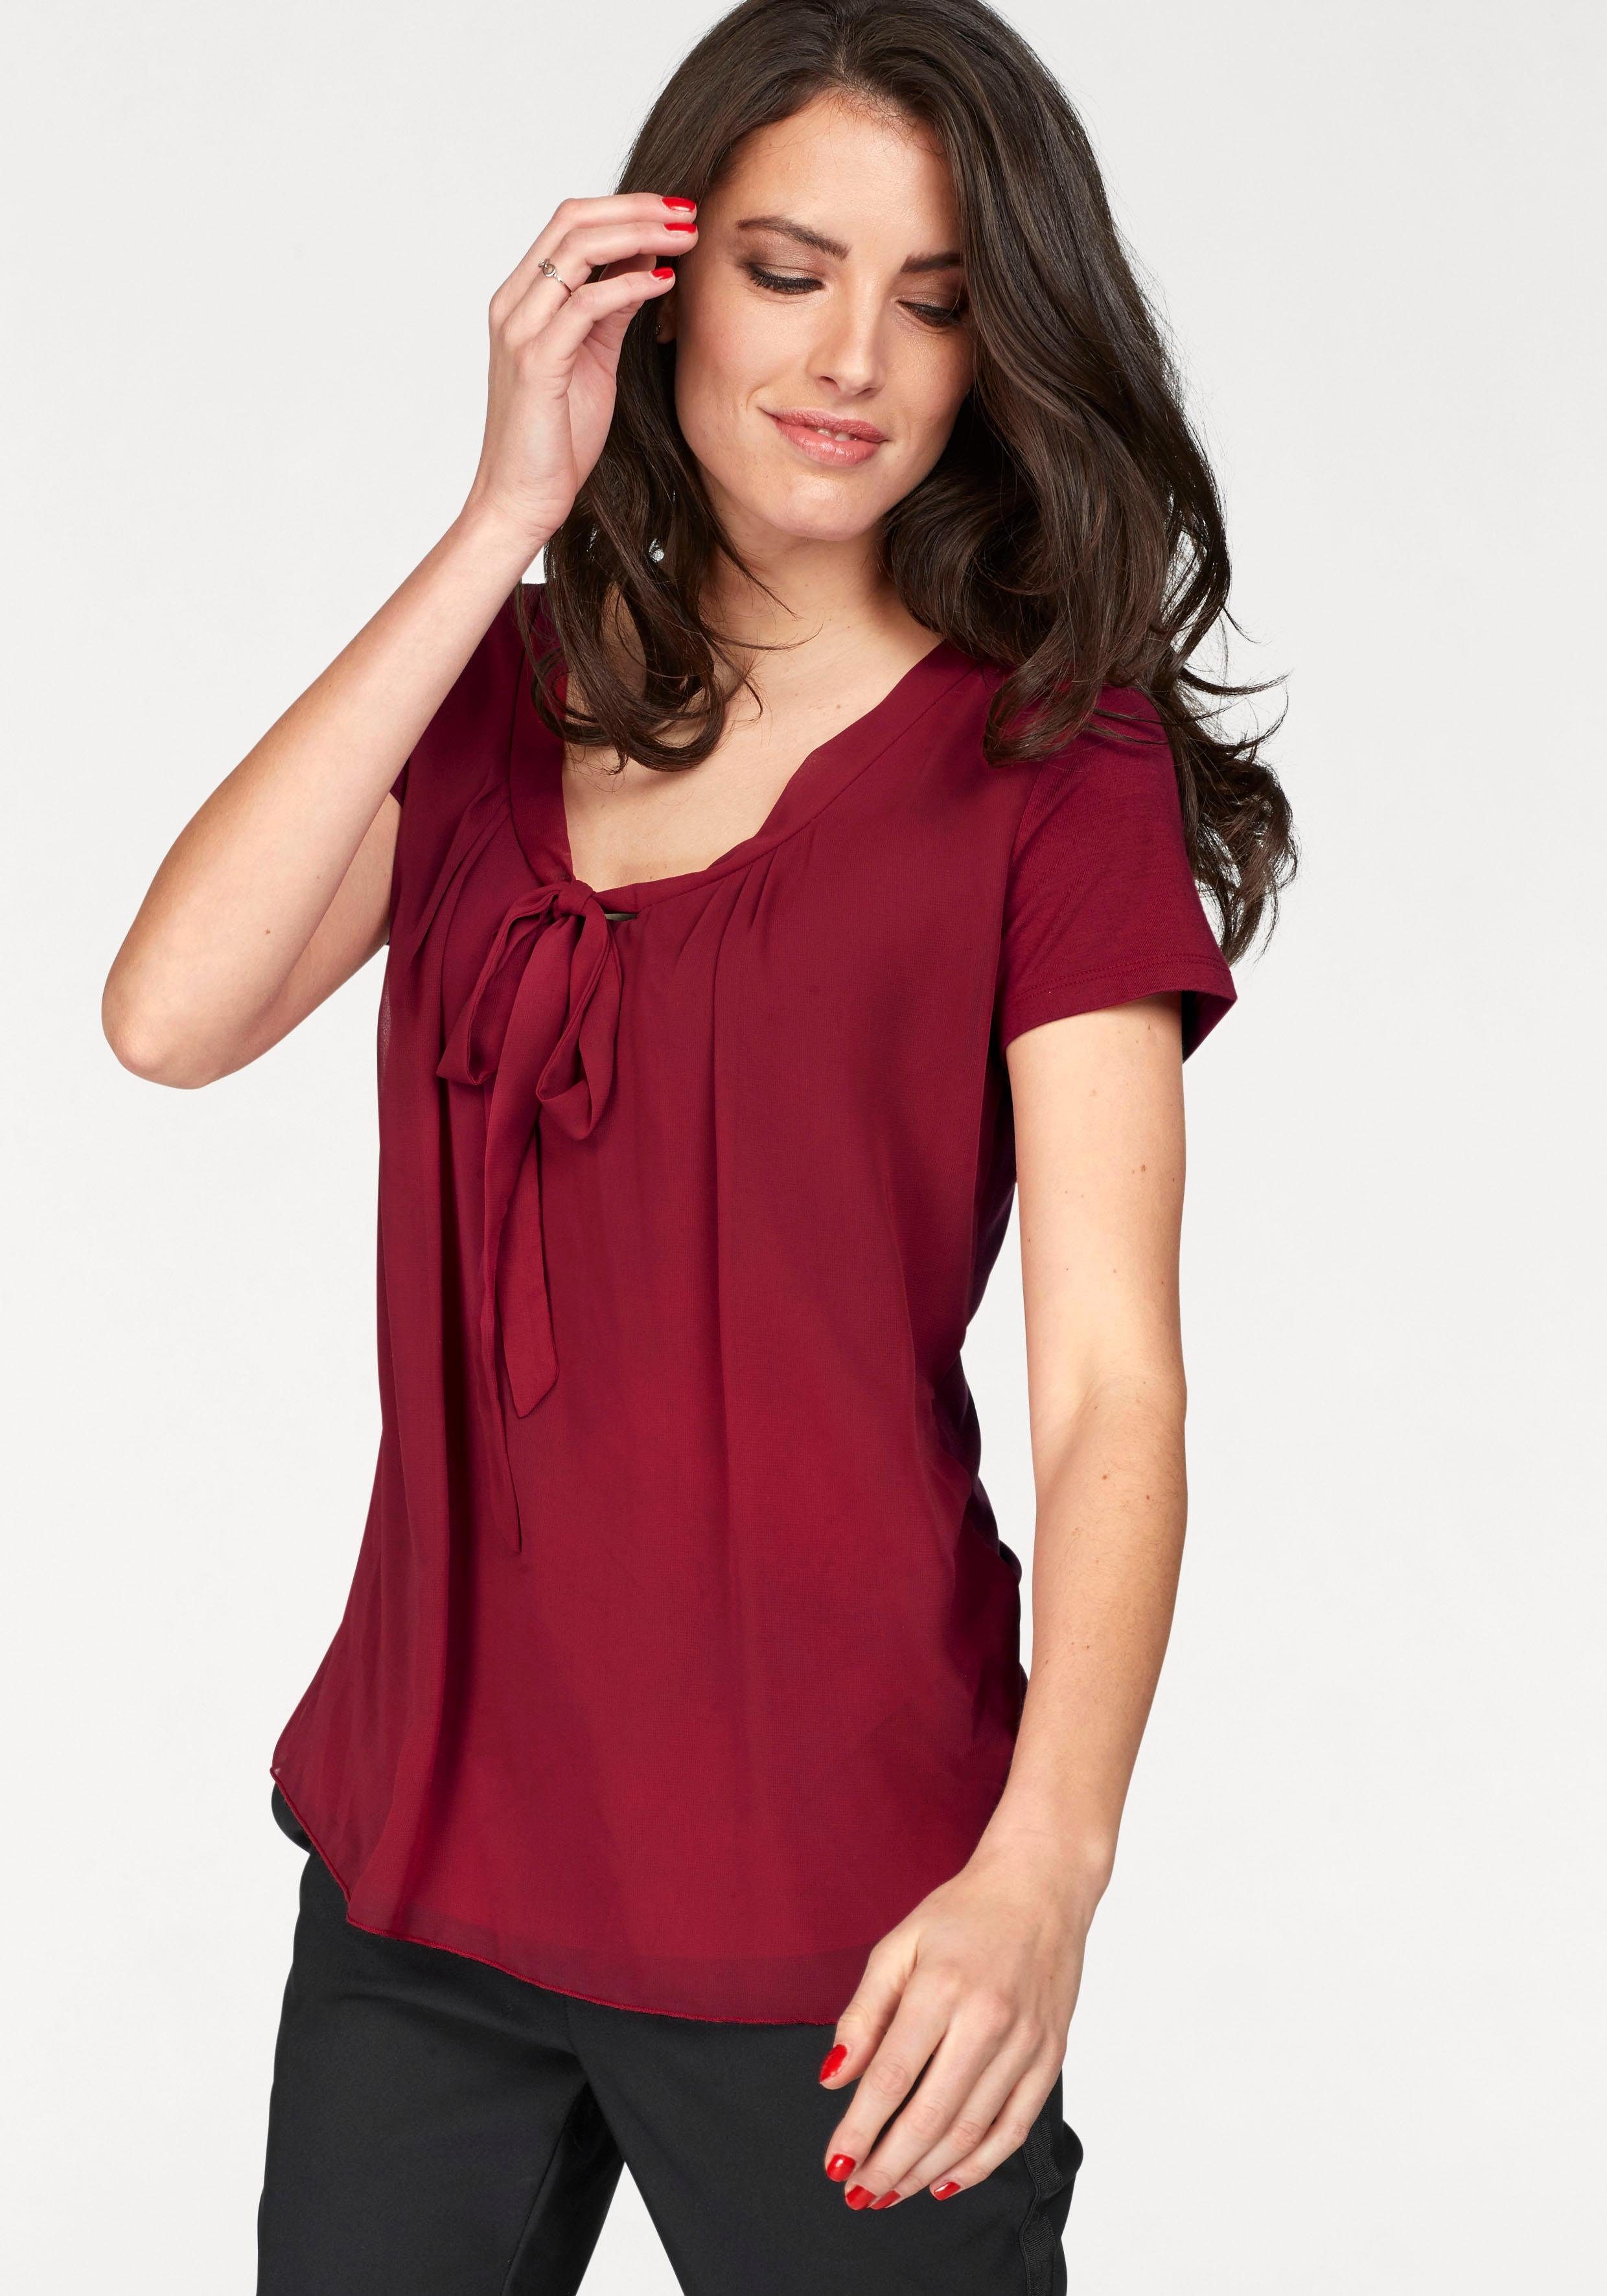 Rote Bluse online kaufen | OTTO